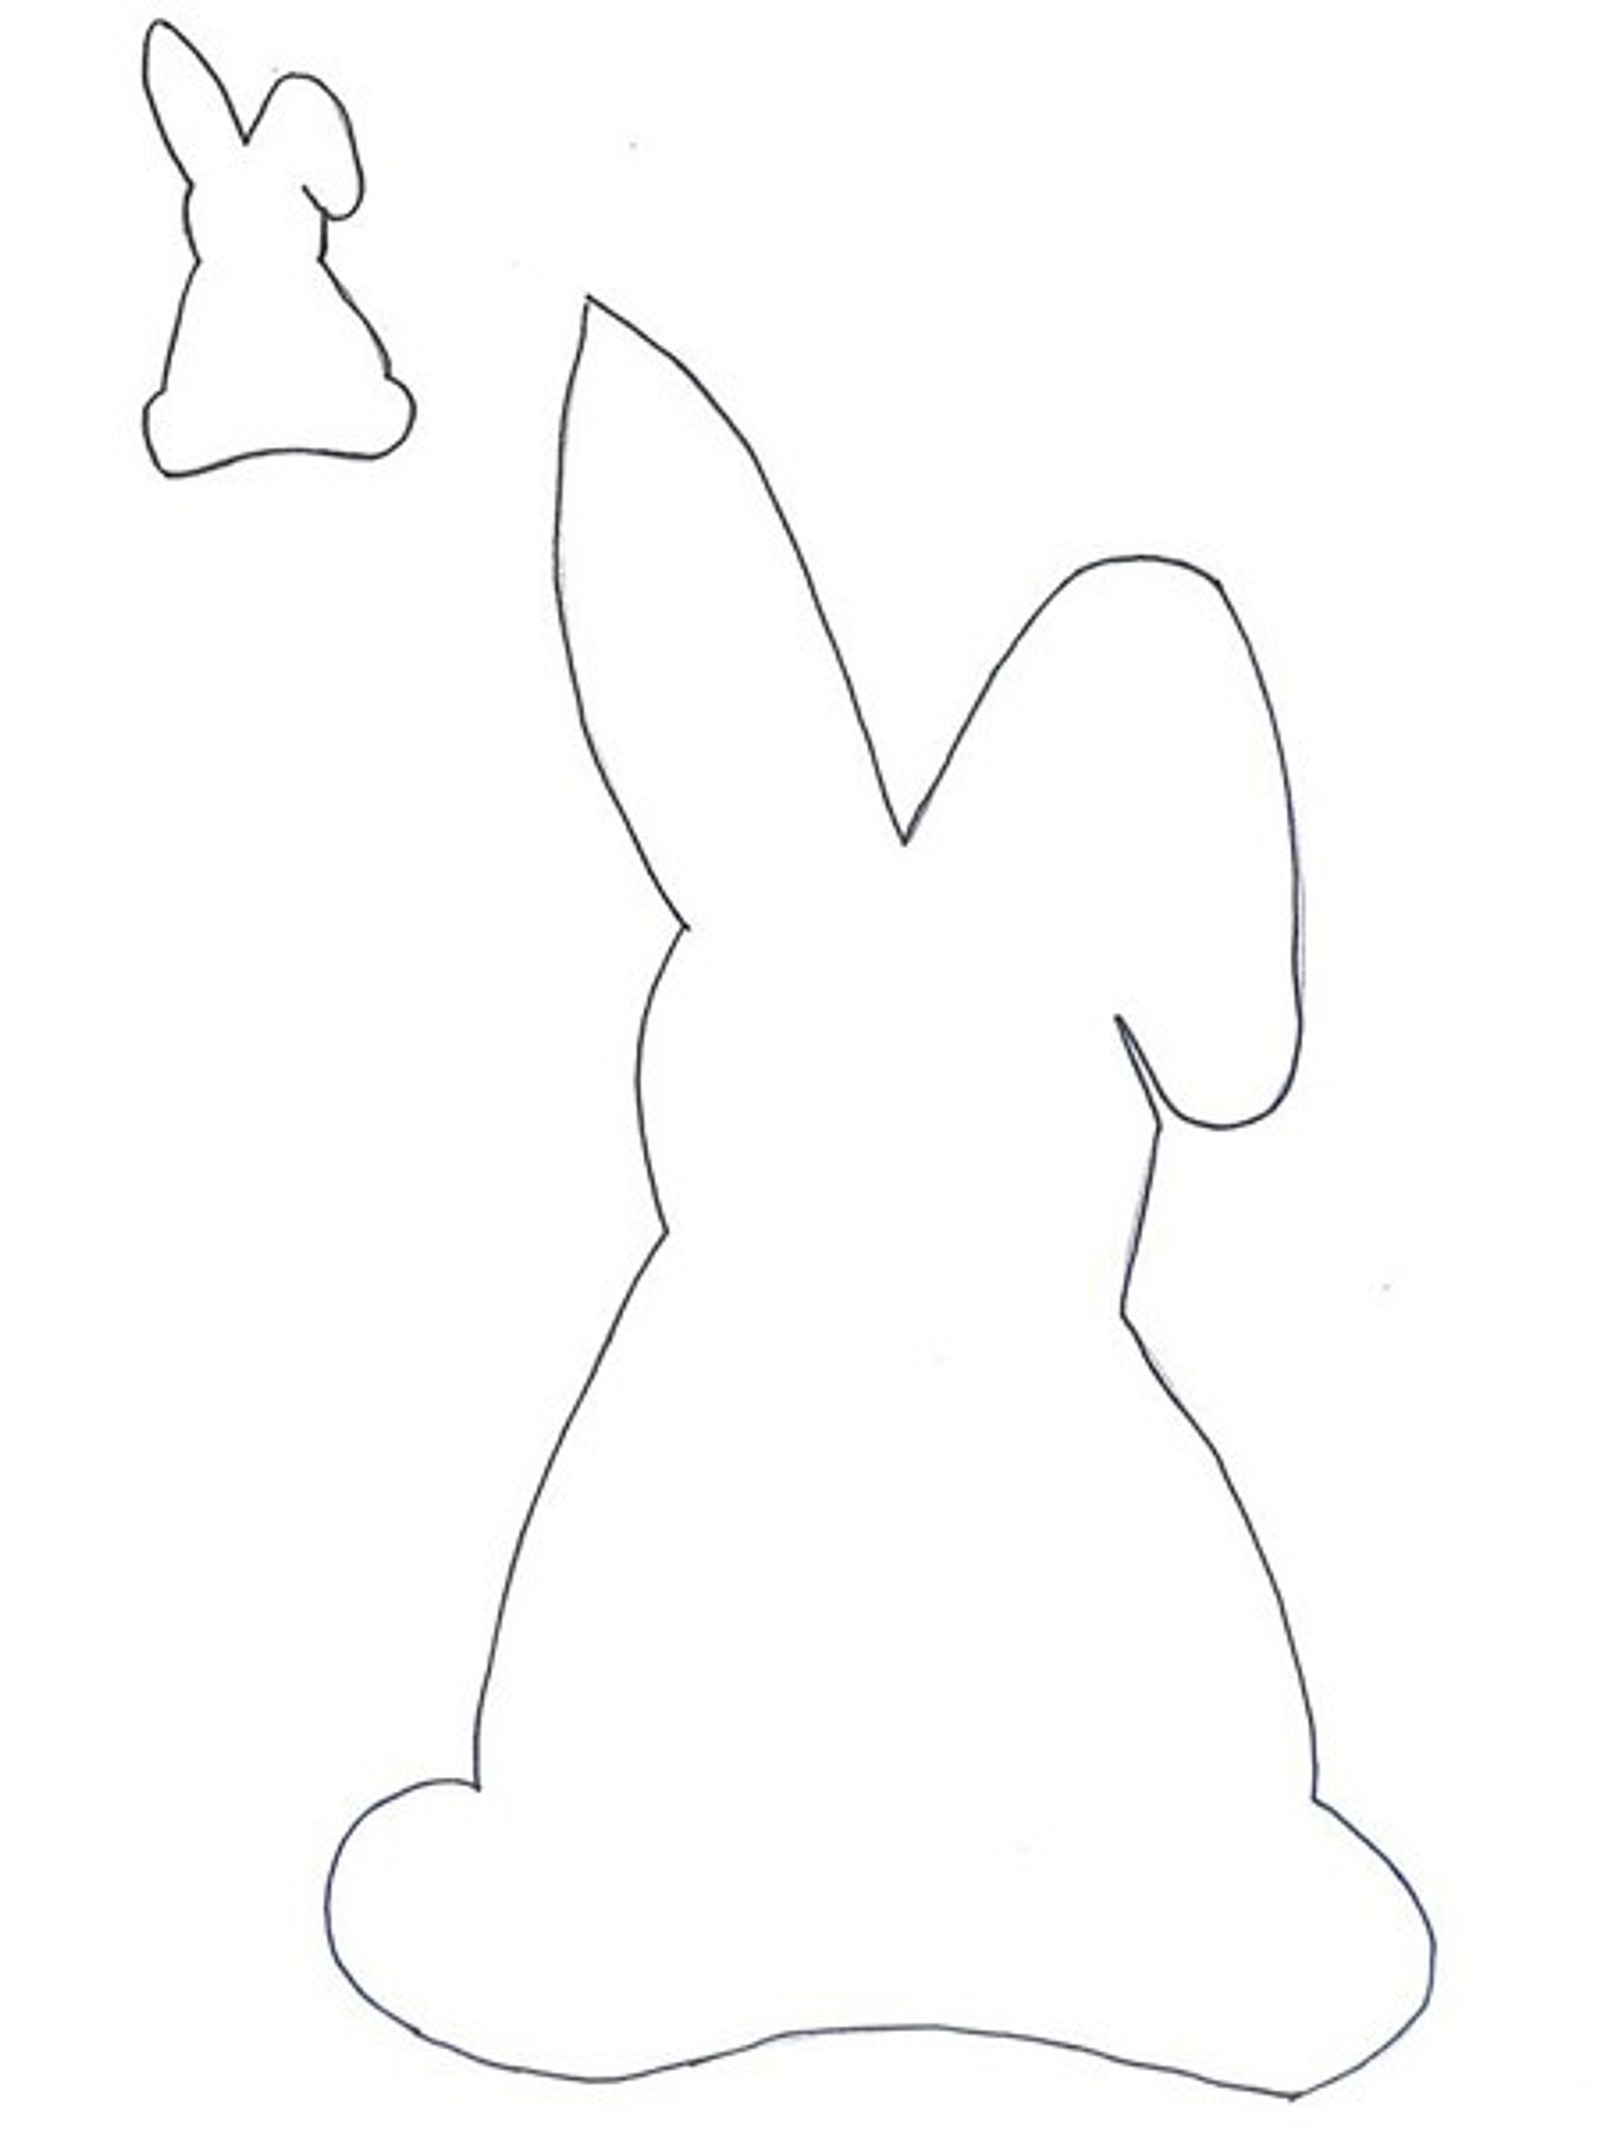 Шаблон пасхального зайца. Лекало пасхального кролика. Трафарет пасхального зайца. Пасхальный зайчик шаблон. Пасхальный кролик трафарет.